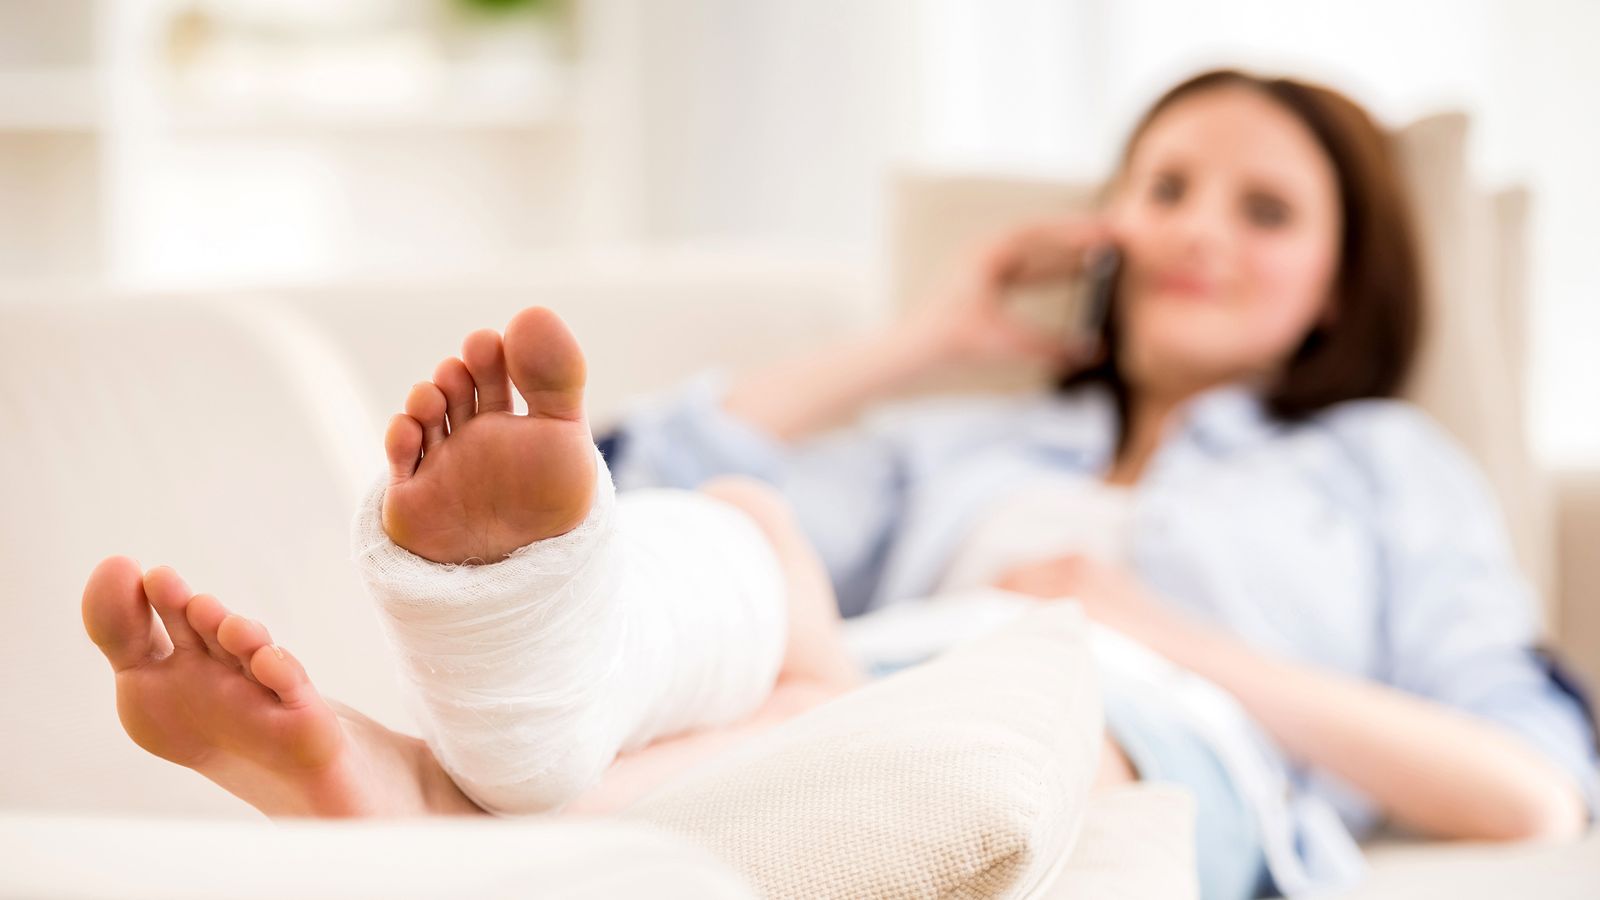 Frau liegt mit gebrochenem Bein auf einem Krankenbett